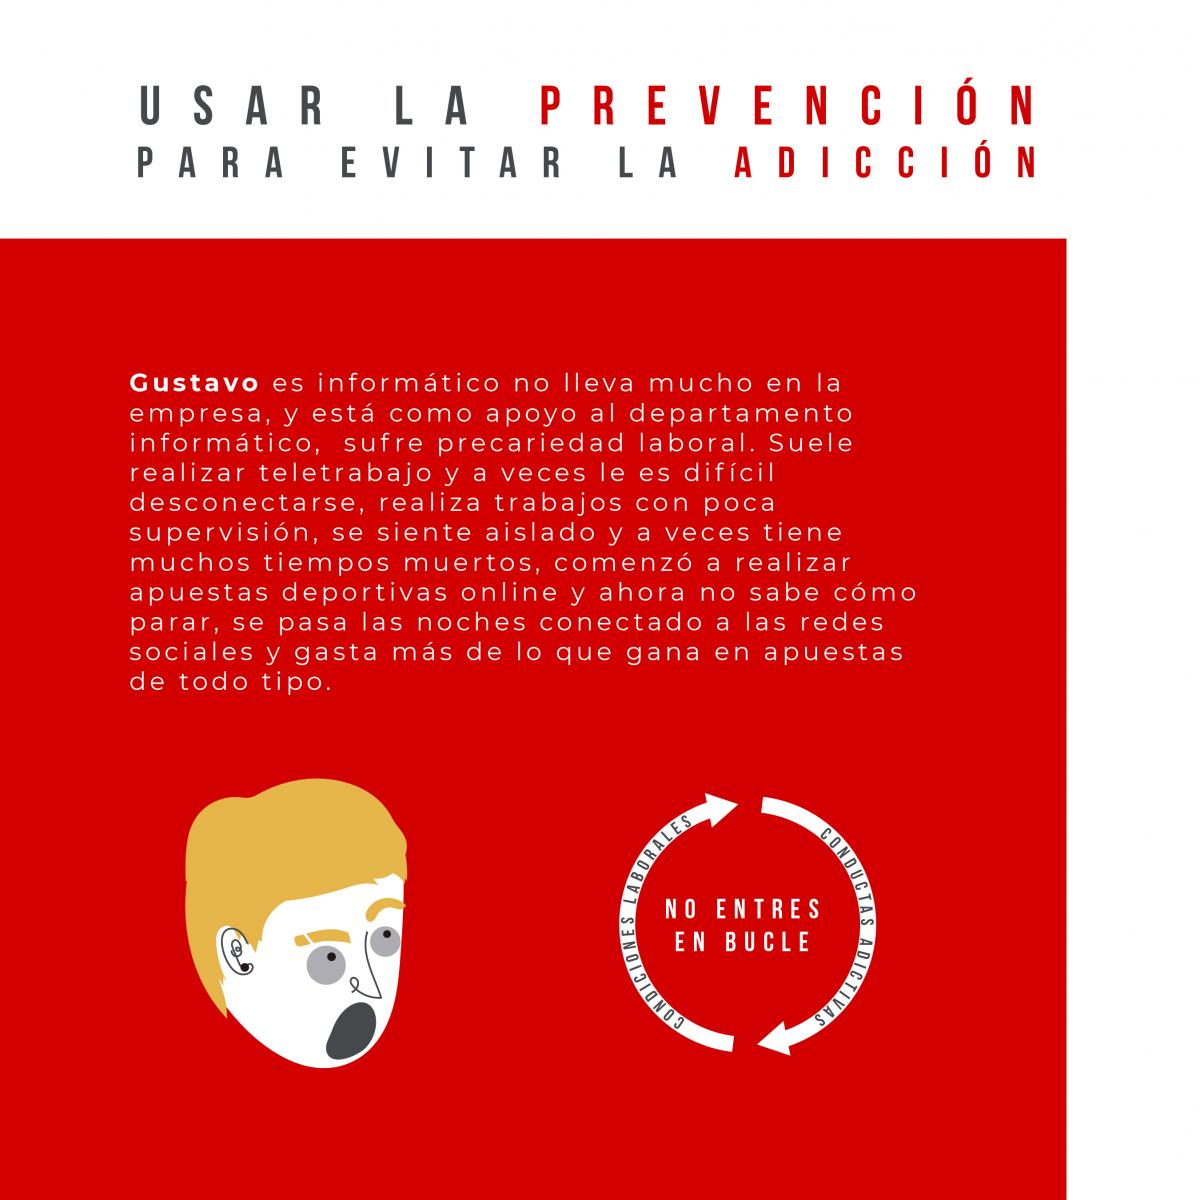 Campaña "Usar la prevención para evitar la adicción" TIC Facebook 2